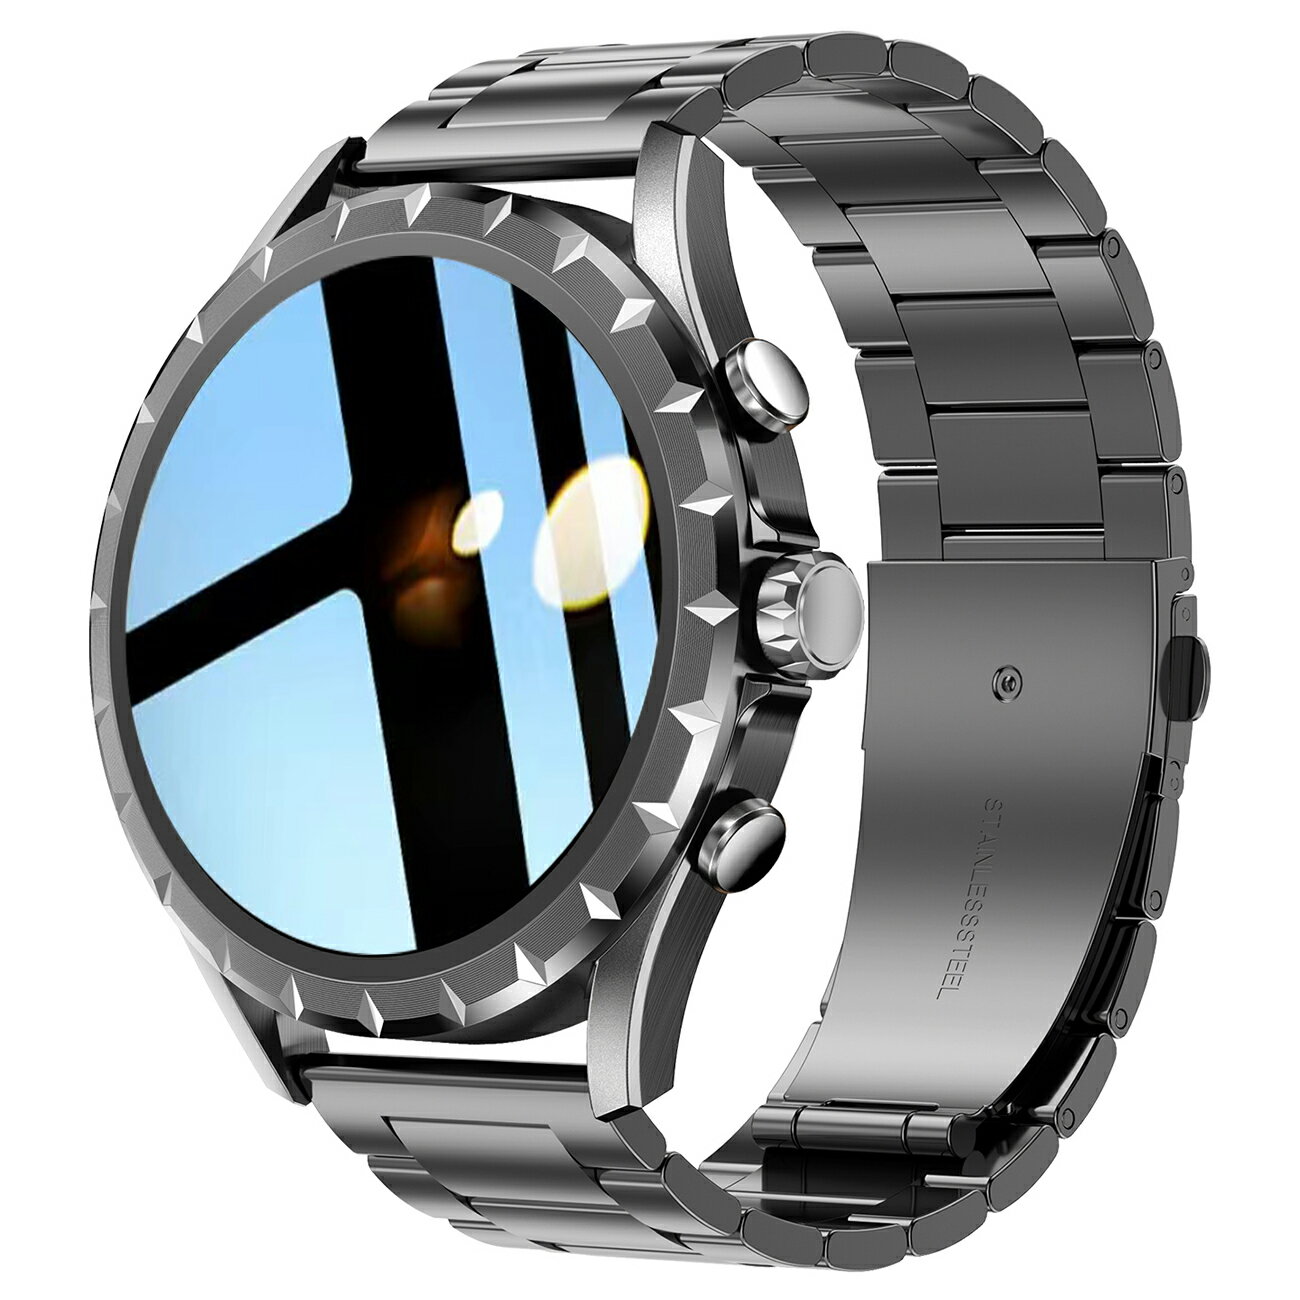 小米米家頂配版watch智能手表藍牙通話NFC支付防水運動跑步多功能-樂購